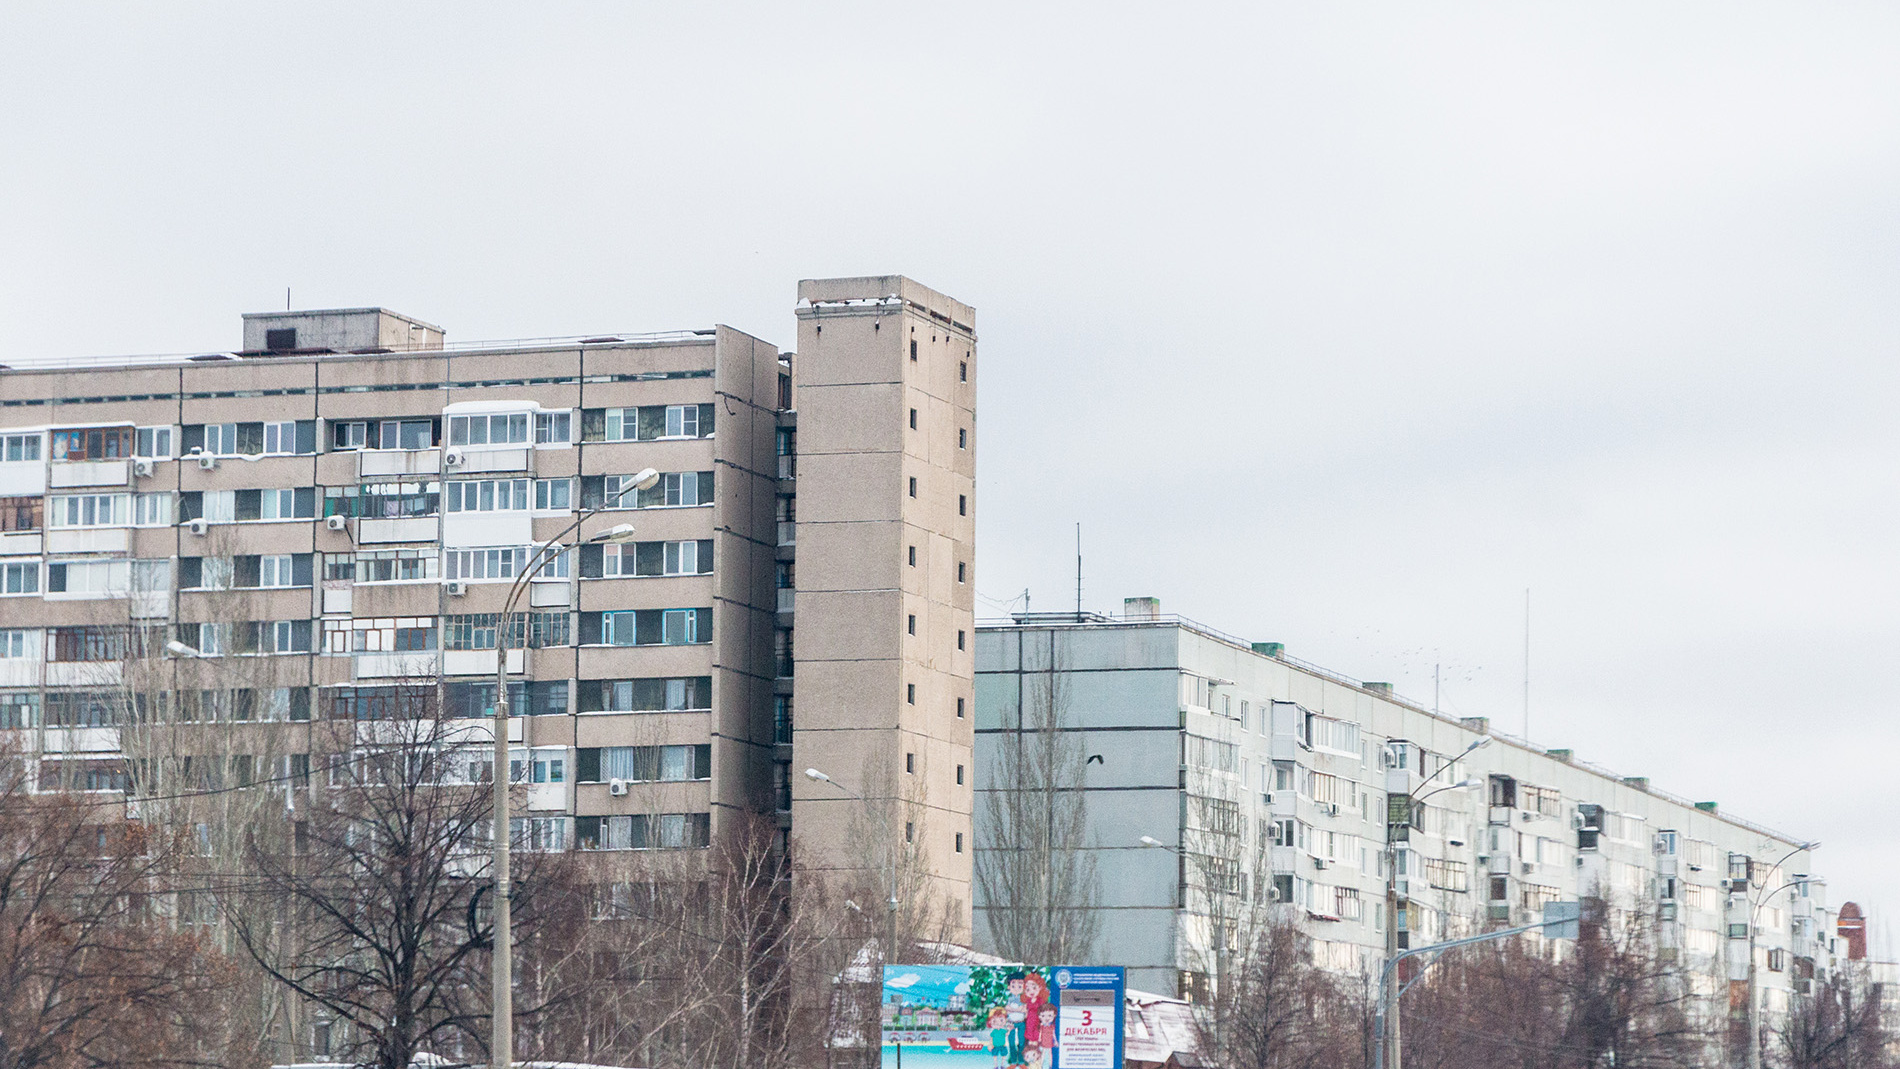 Рванули в космос: в Тольятти подскочили цены на жилье